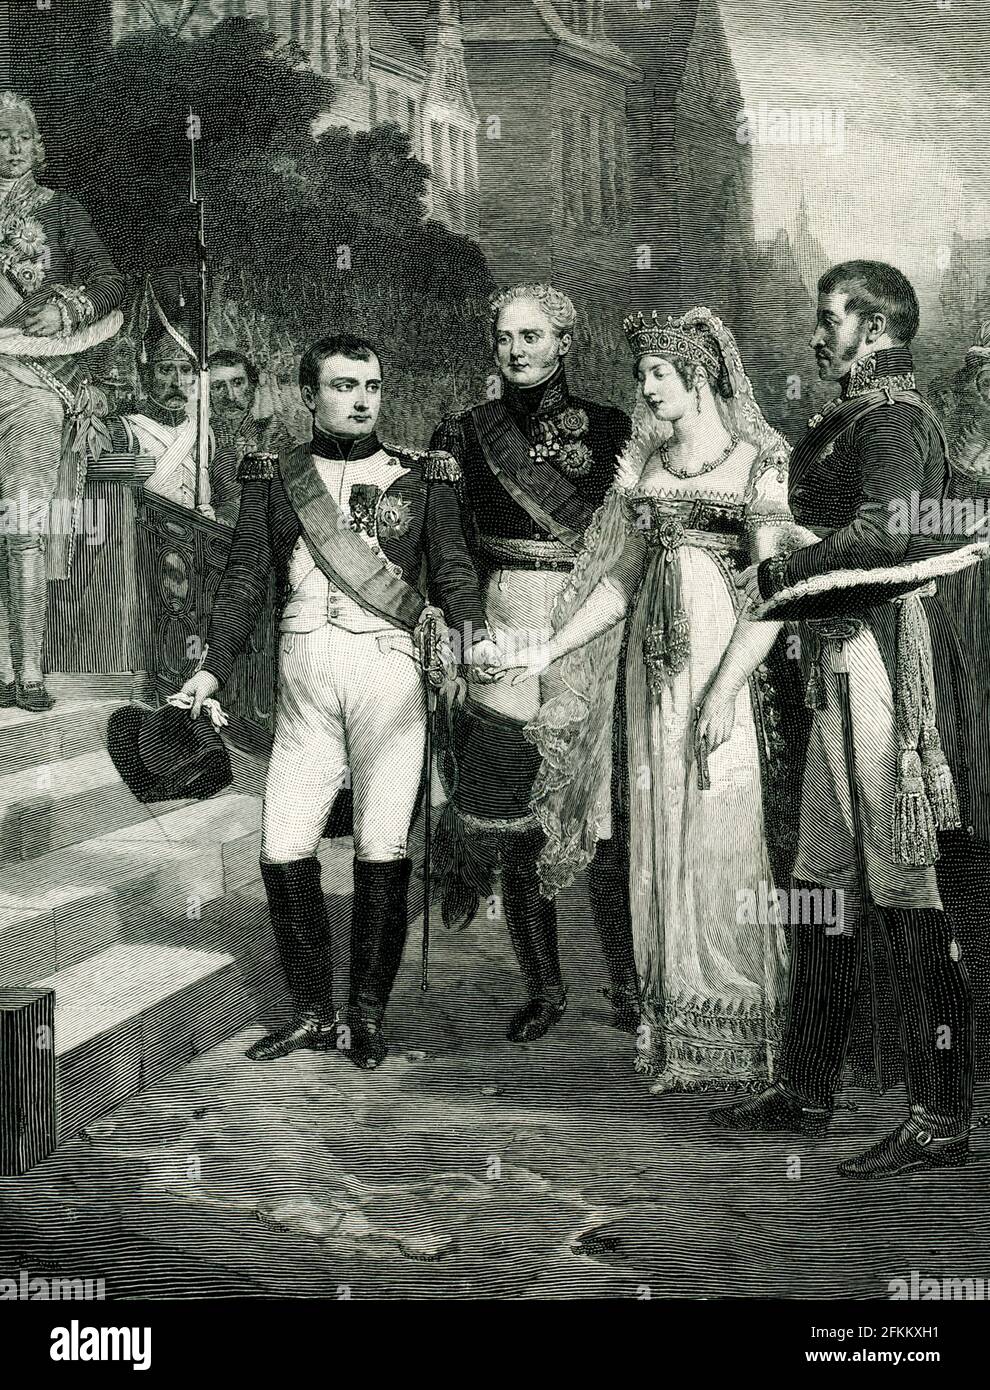 La légende de 1896 se lit comme suit : « Napoléon reçoit la reine de Prusse à Tilsit le 6 1807 juillet de la peinture de Nicolas-Louis-François Gosse au musée de Versailles gravée par Peter Aitken ». Banque D'Images